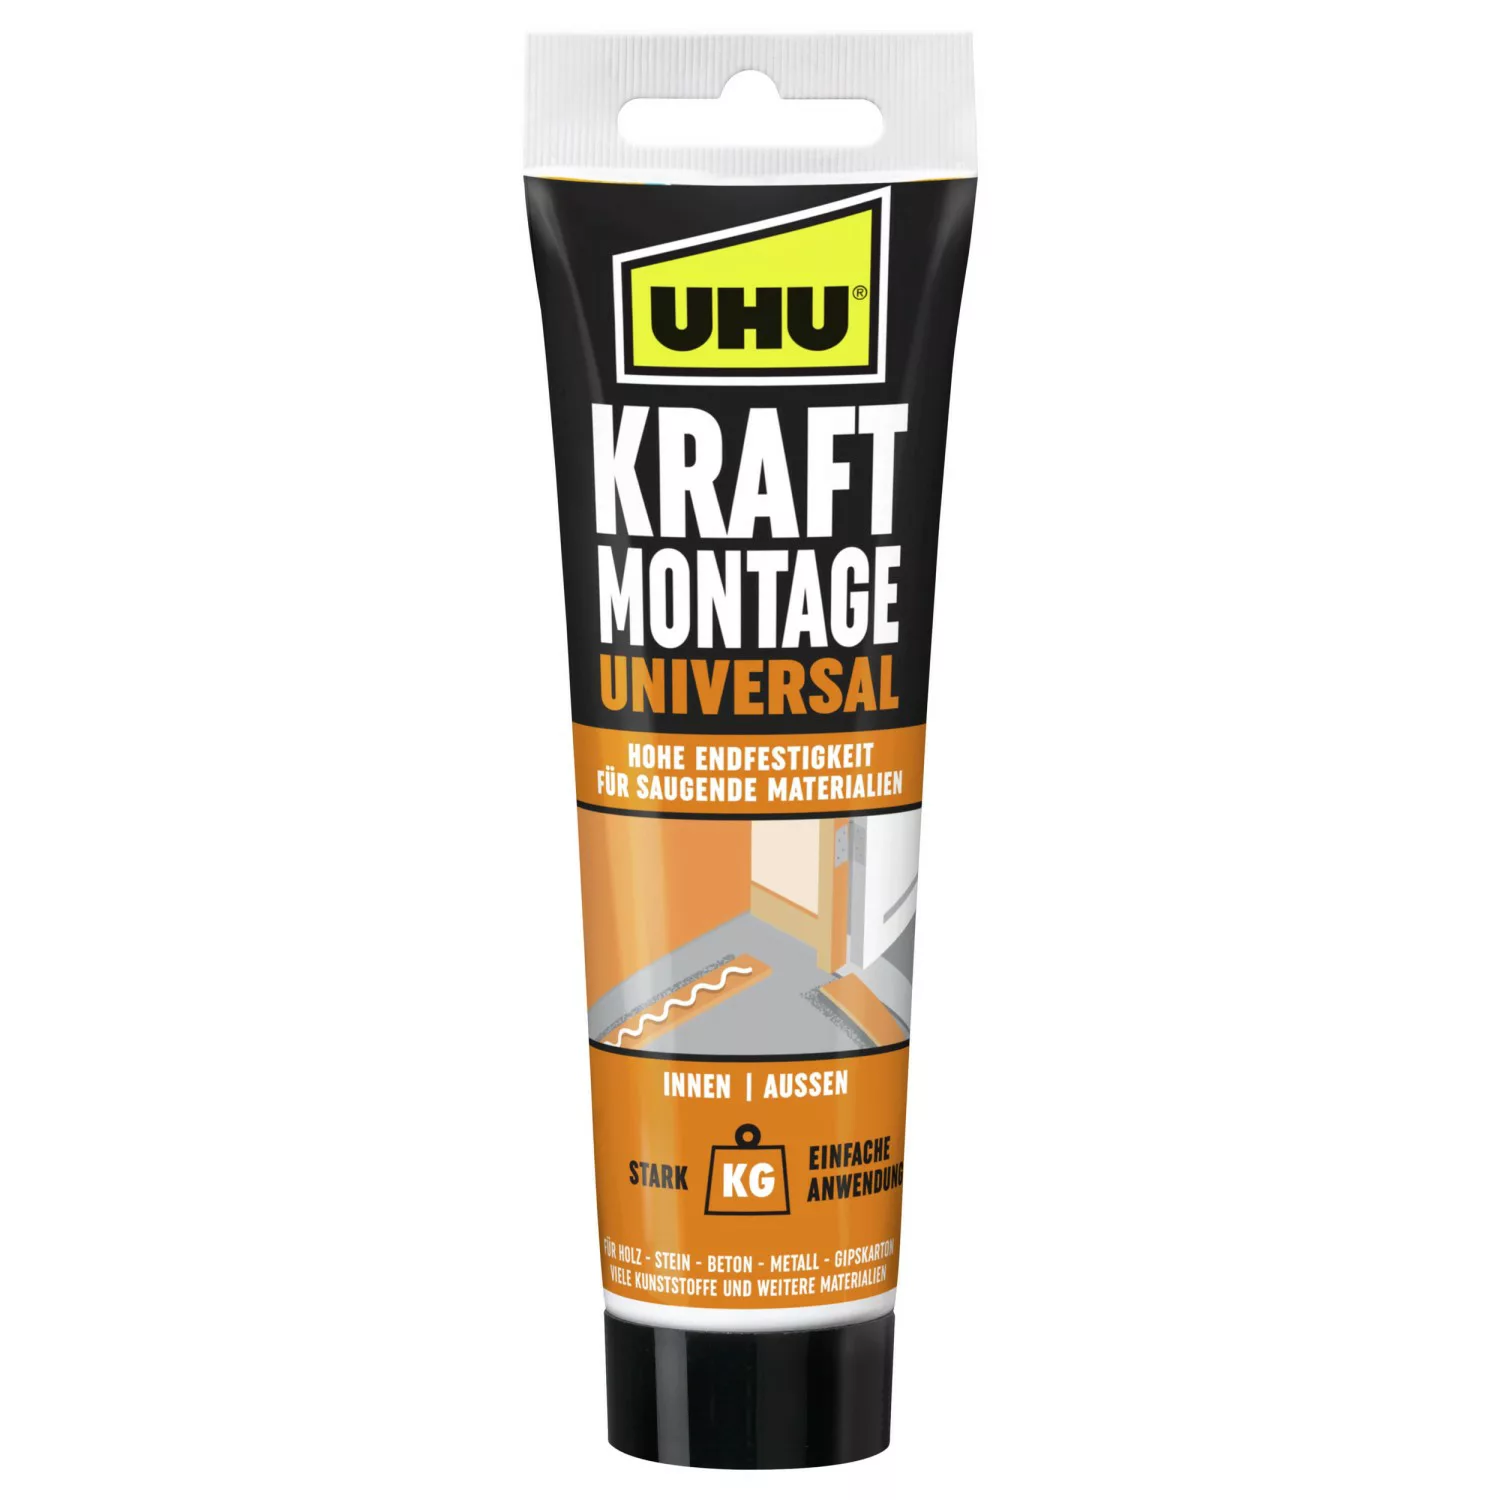 UHU Kraft Montage Universal Tube 200 g günstig online kaufen